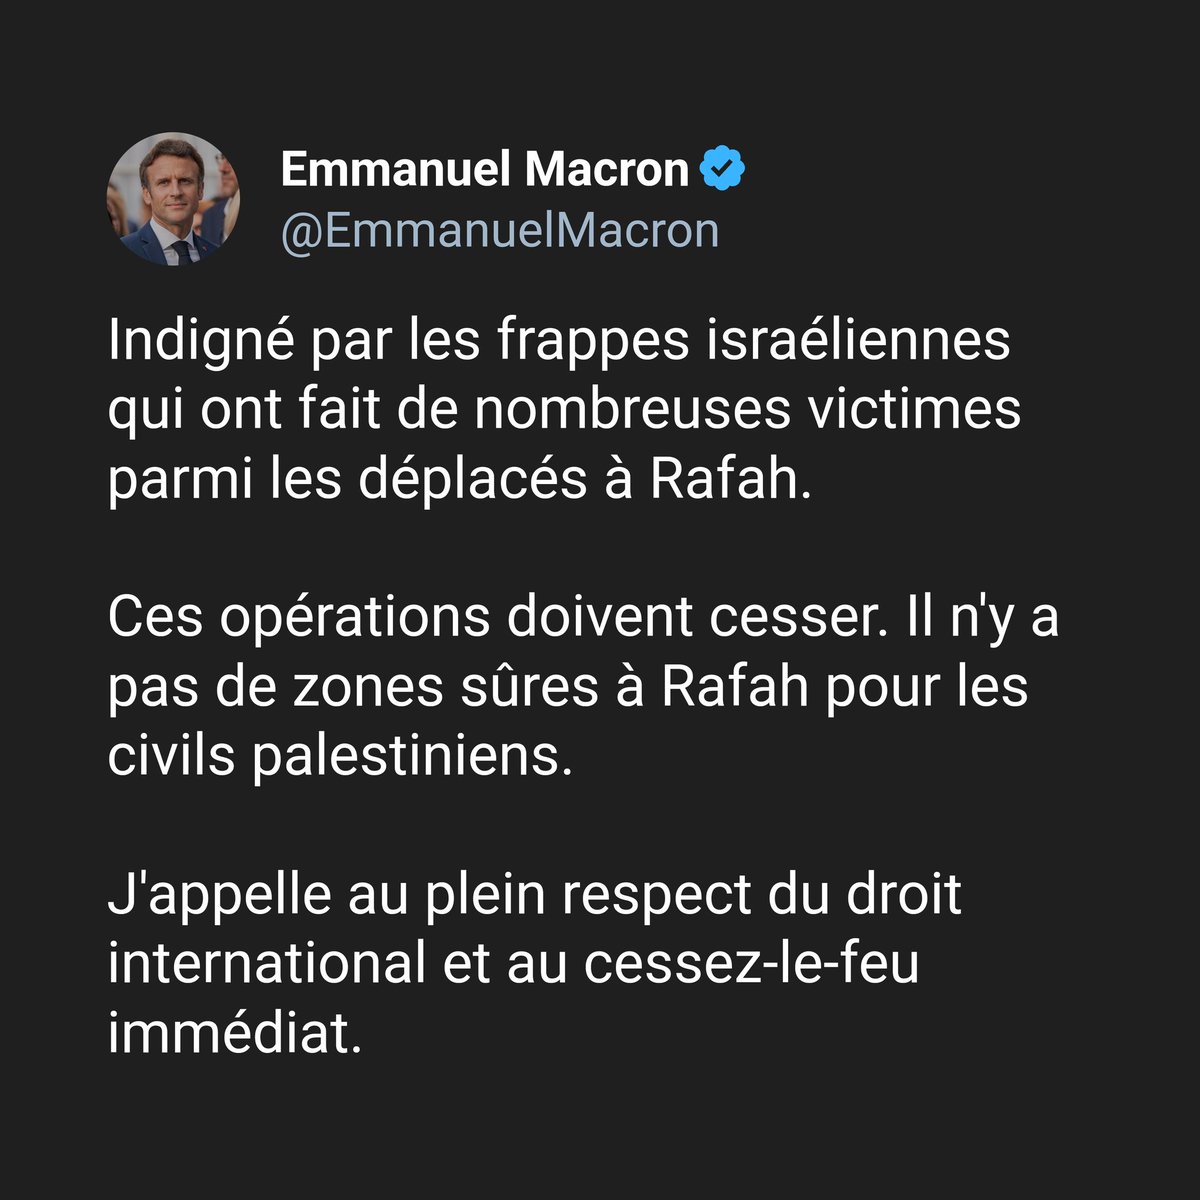 S'indigner, c'est le minimum. Agir, c'est mieux. @EmmanuelMacron, allez-vous reconnaître l'État de Palestine ? Allez-vous prendre des sanctions contre Israël ? Sans ça, vous êtes complice du génocide et vous blanchissez les crimes de guerre de Netanyahu.